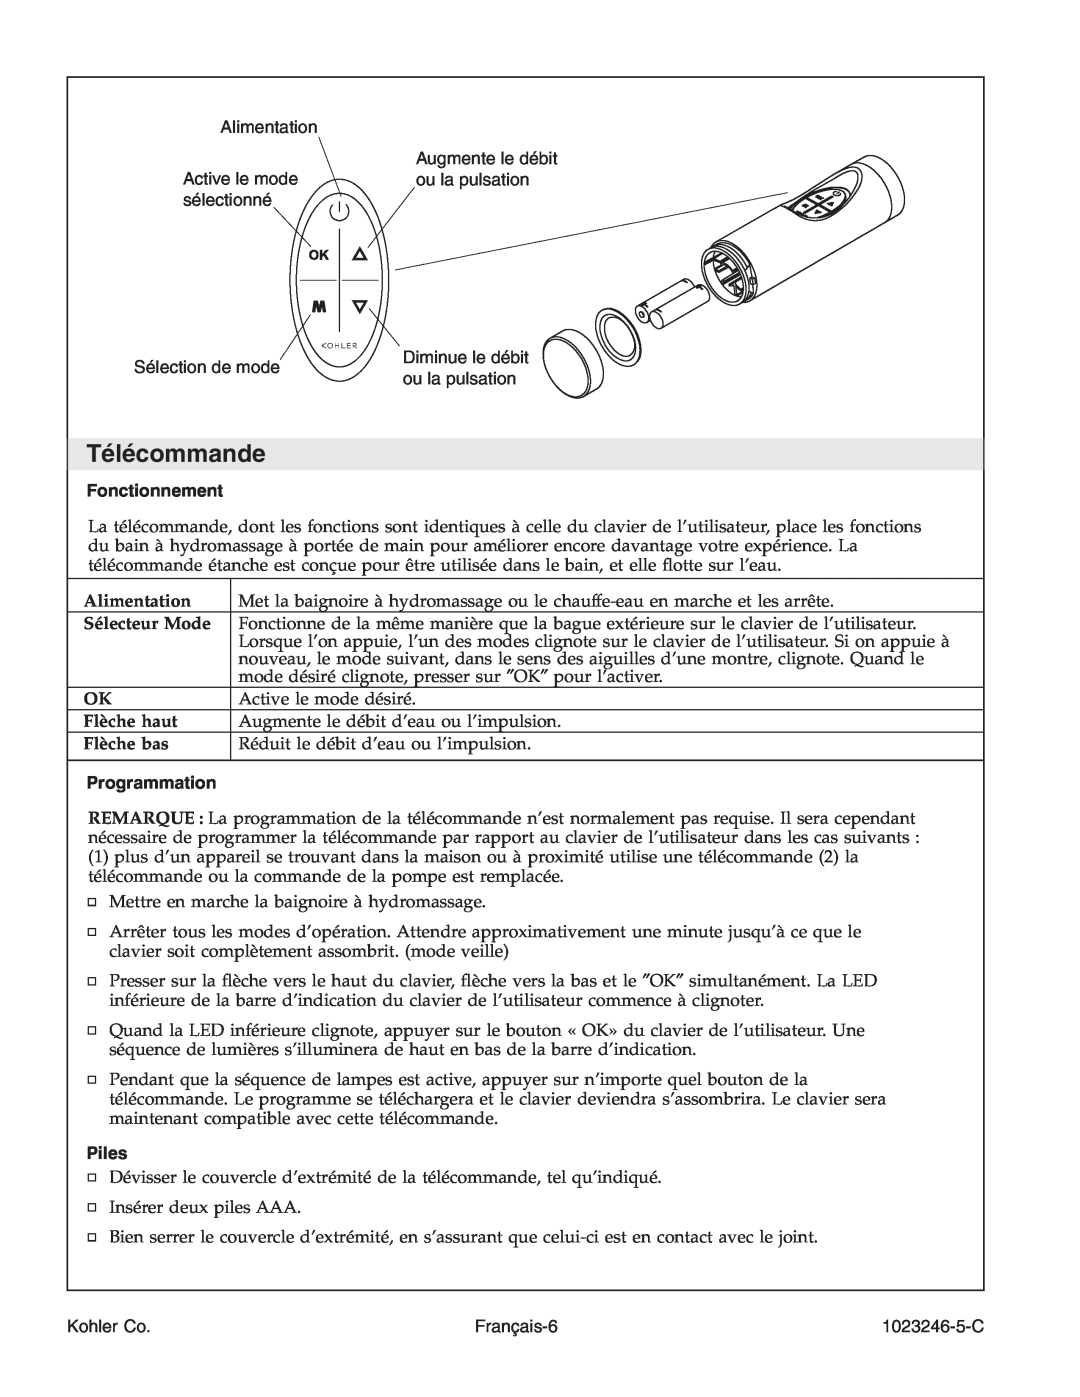 Kohler K-1418-CT manual Télécommande, Fonctionnement, Programmation, Piles 